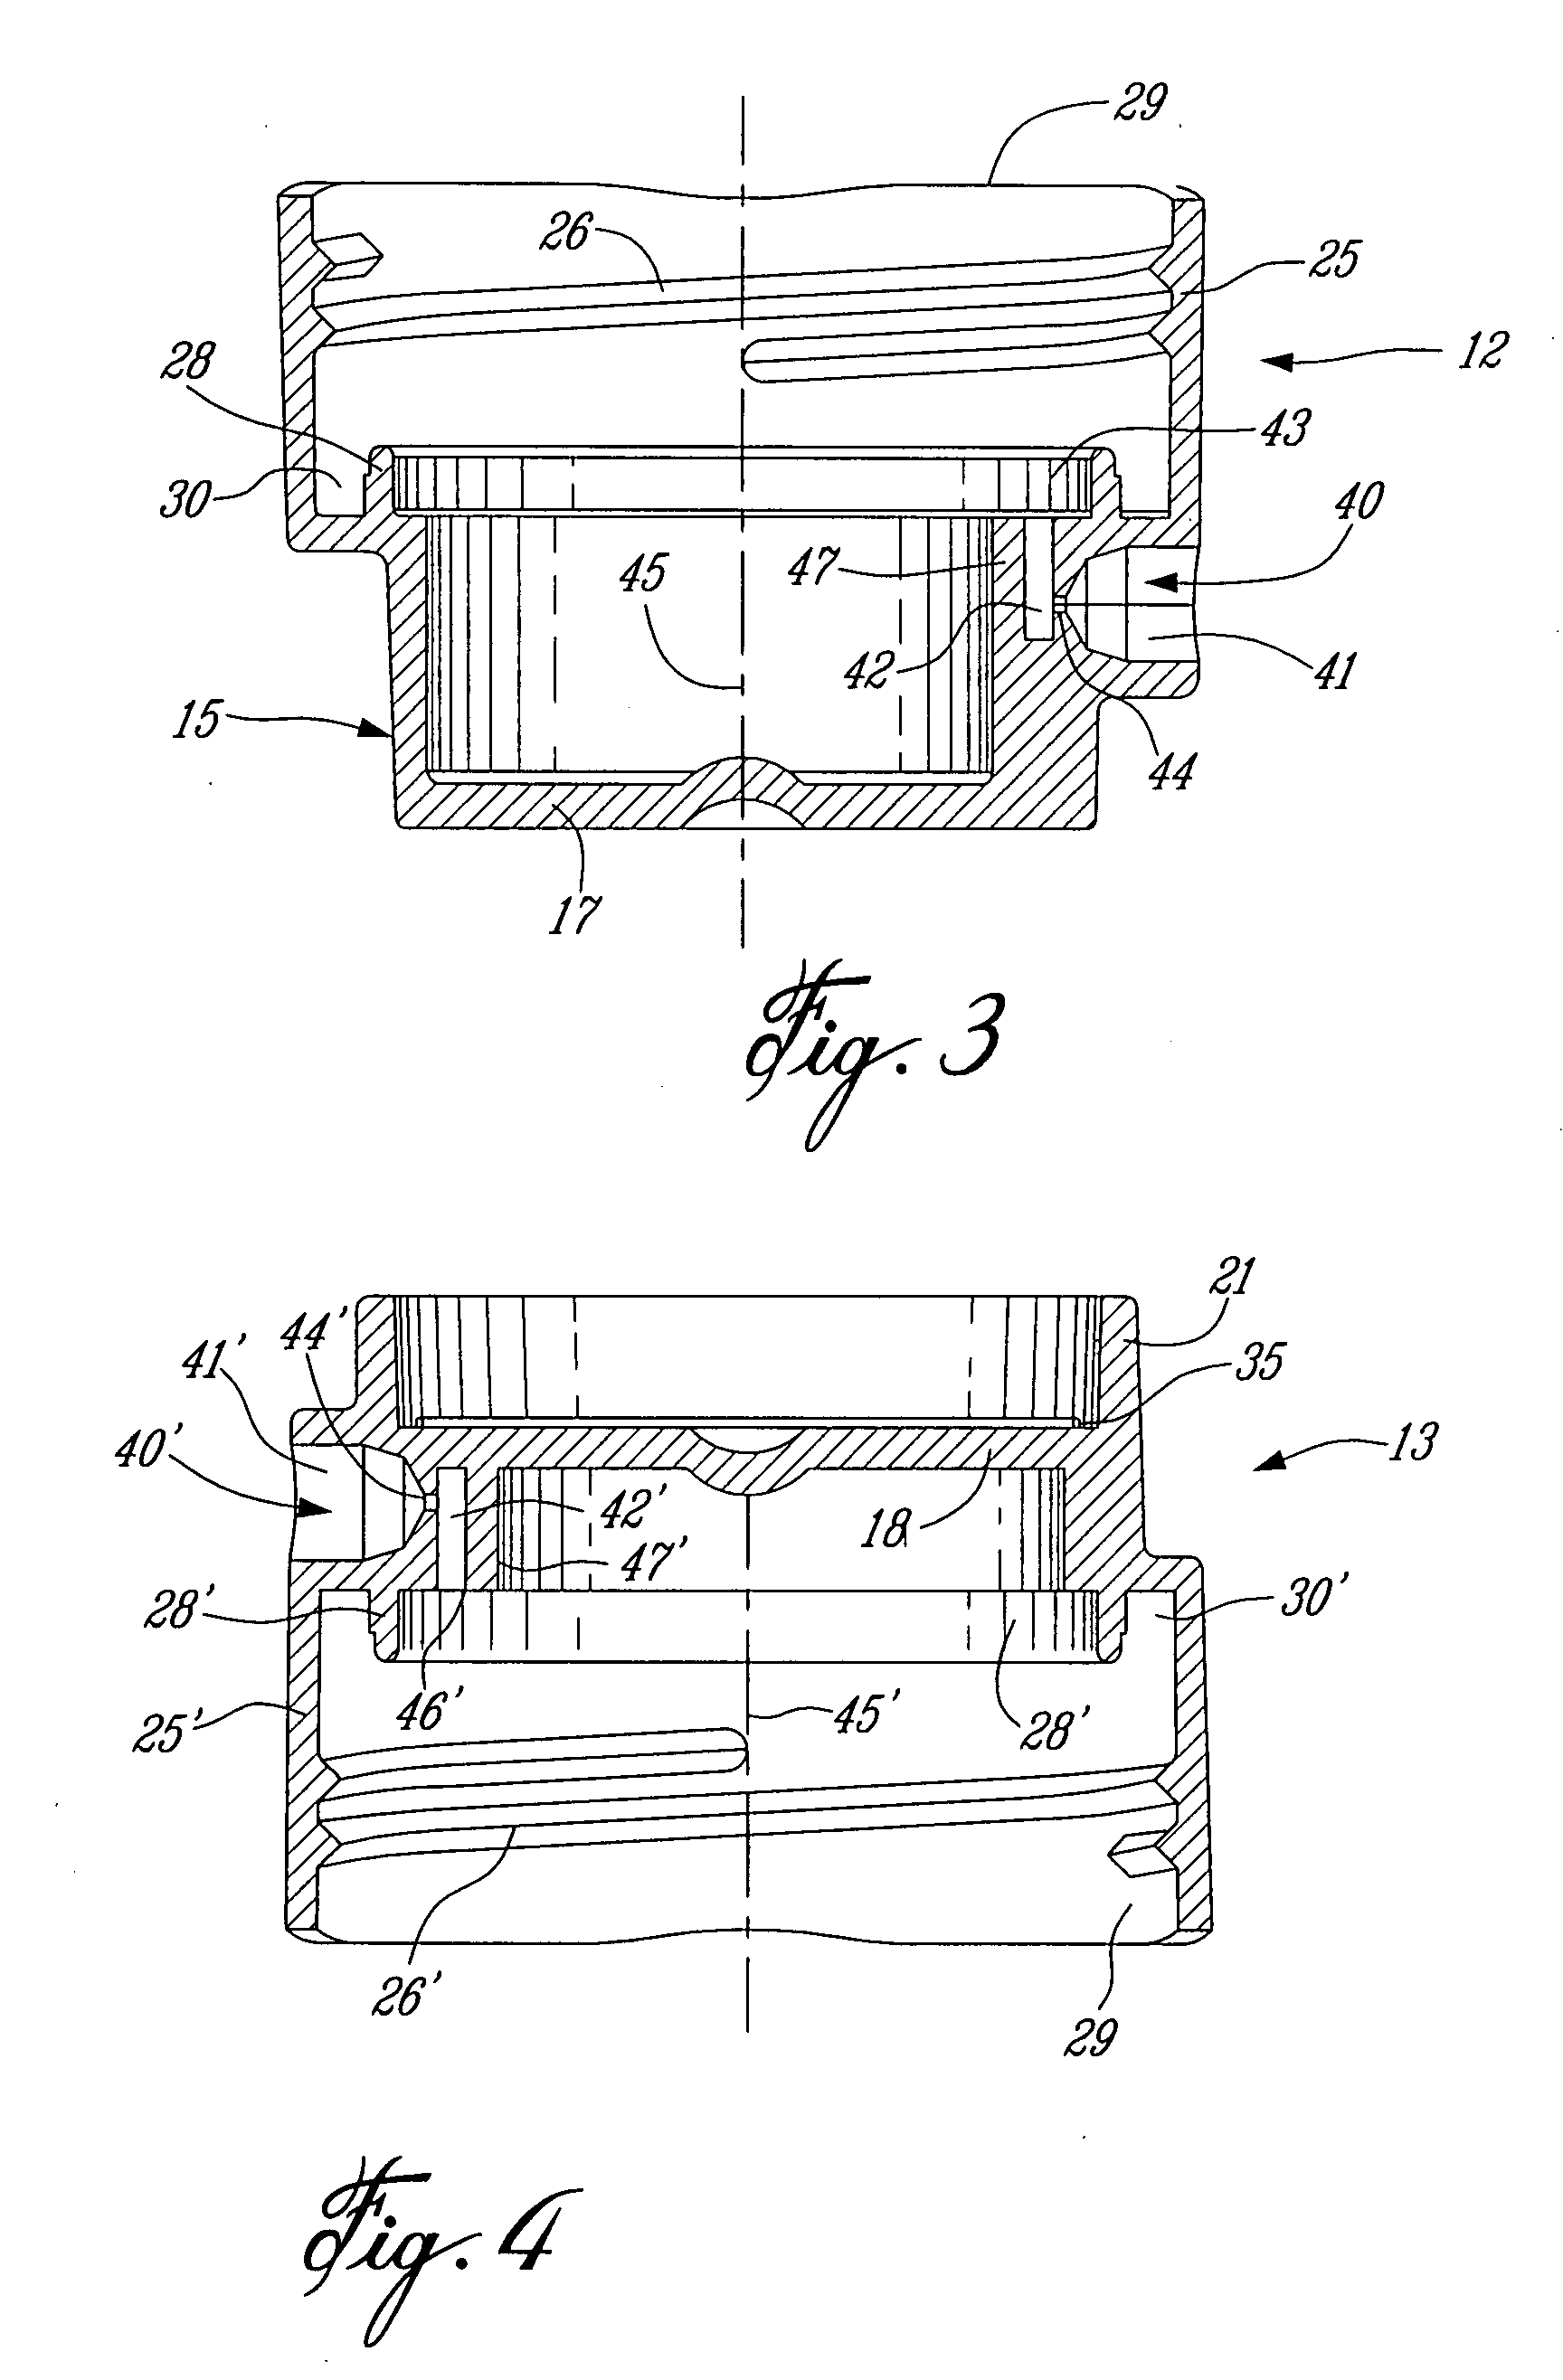 Reversible vacuum filter cartridge